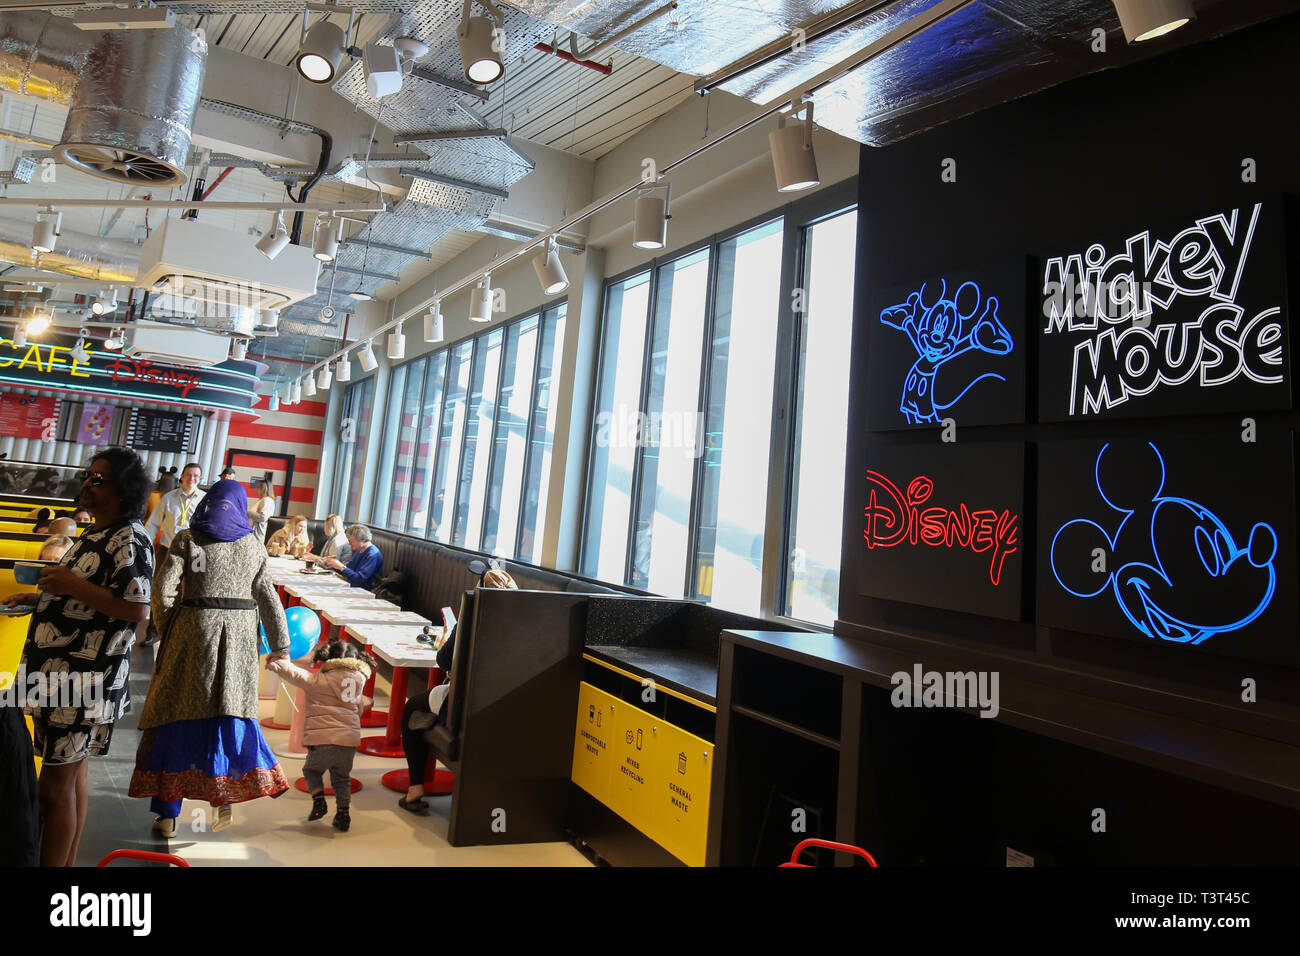 La Primark Cafe avec Disney lors de l'ouverture de la world's Biggest Primark store à Birmingham. Banque D'Images